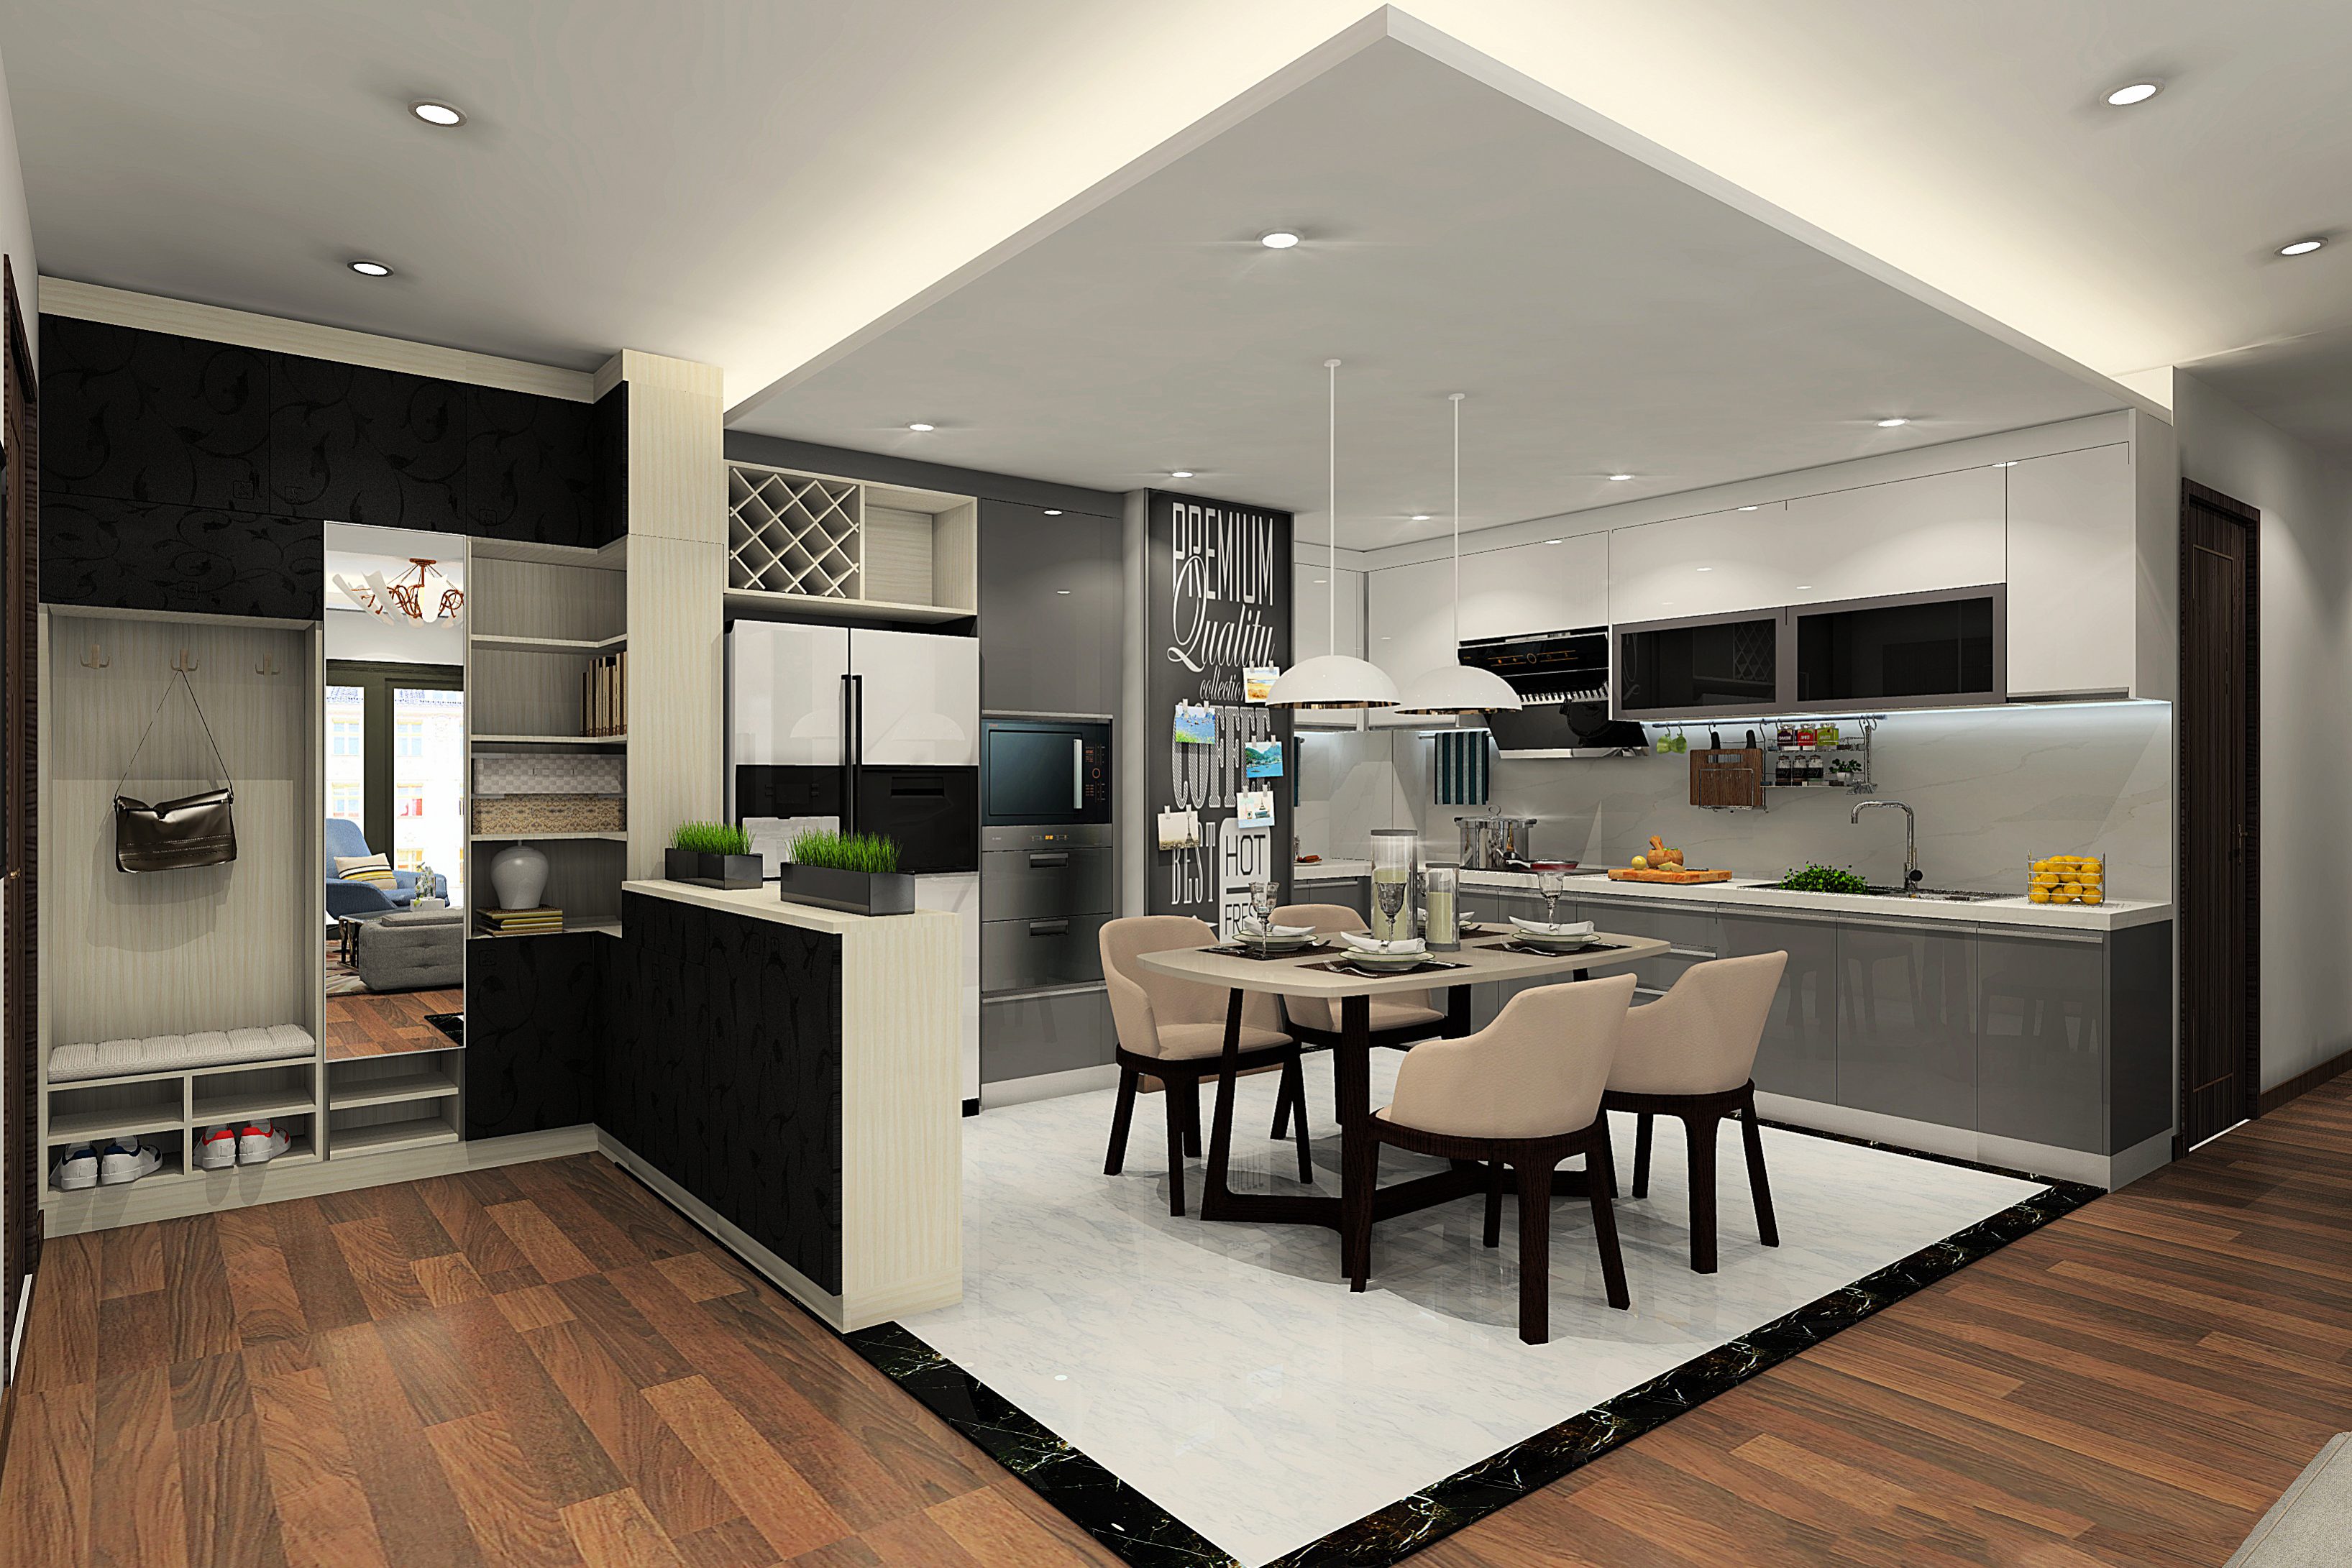 Gợi ý các mẫu thiết kế nội thất phòng bếp nhà ống đẹp và hiện đại